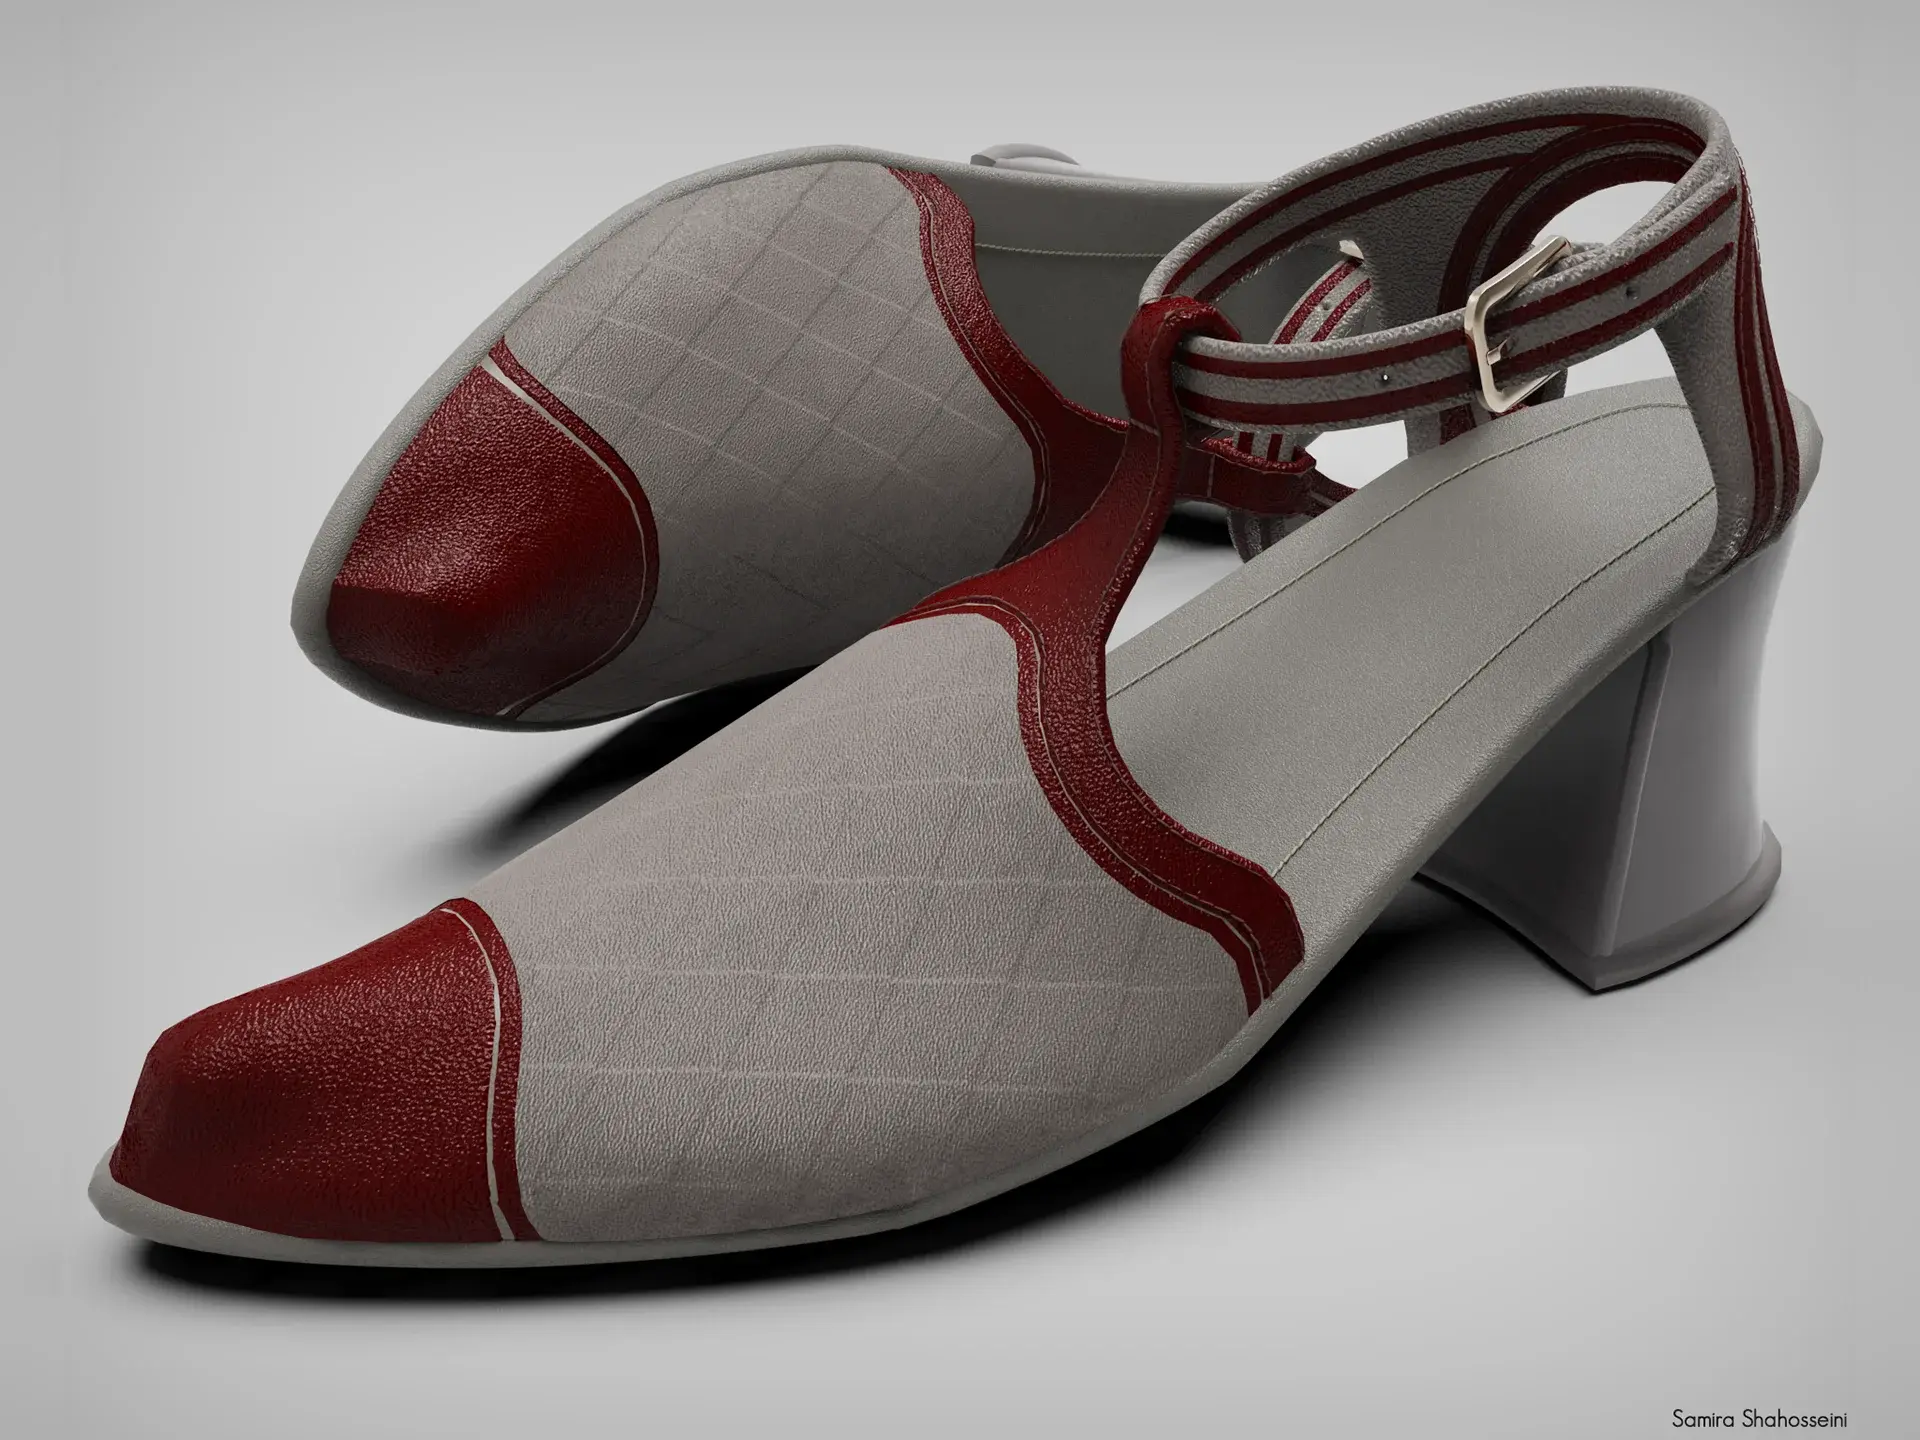 un-real-zampolini-biffi-gentili_virtual-fashion-calzature-scarpe-suole_1